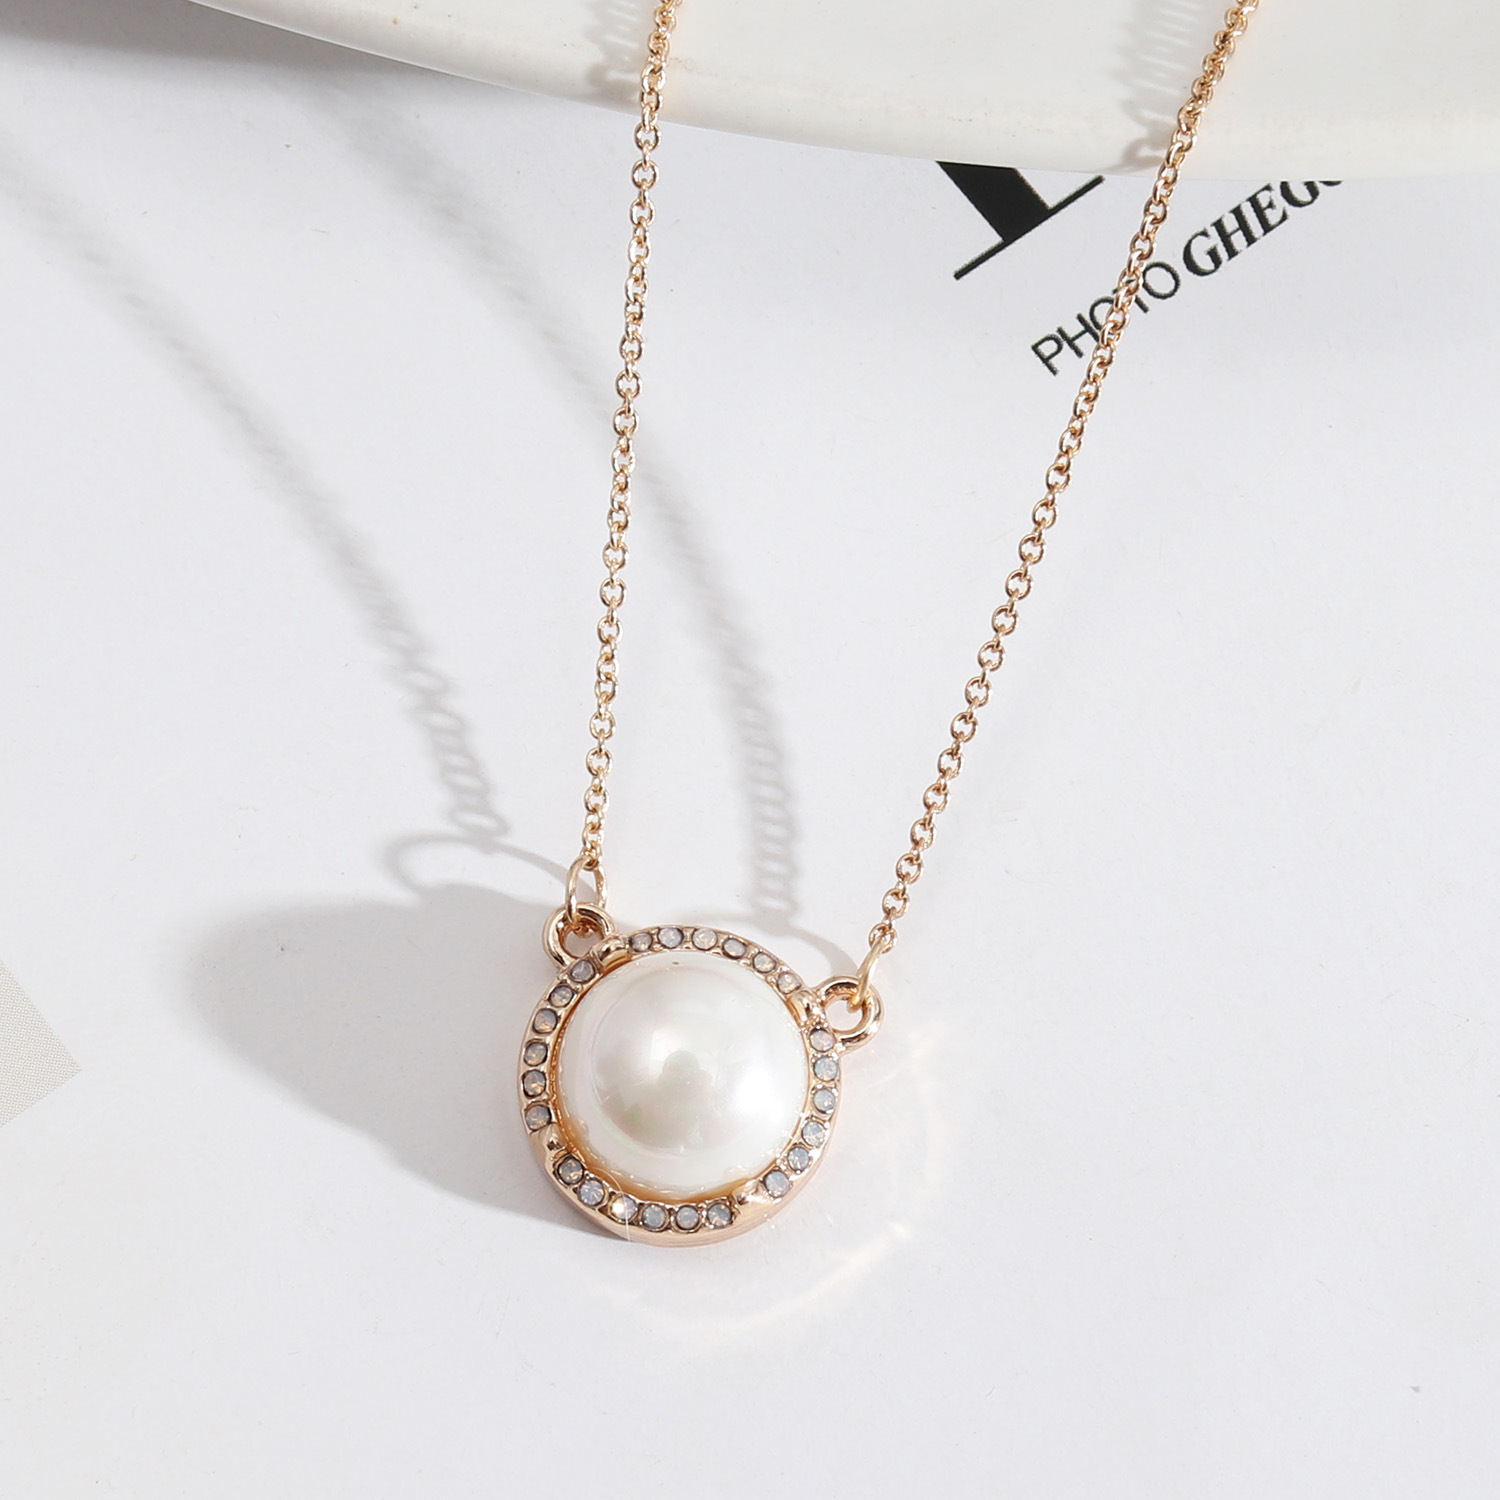 2:perla bianca